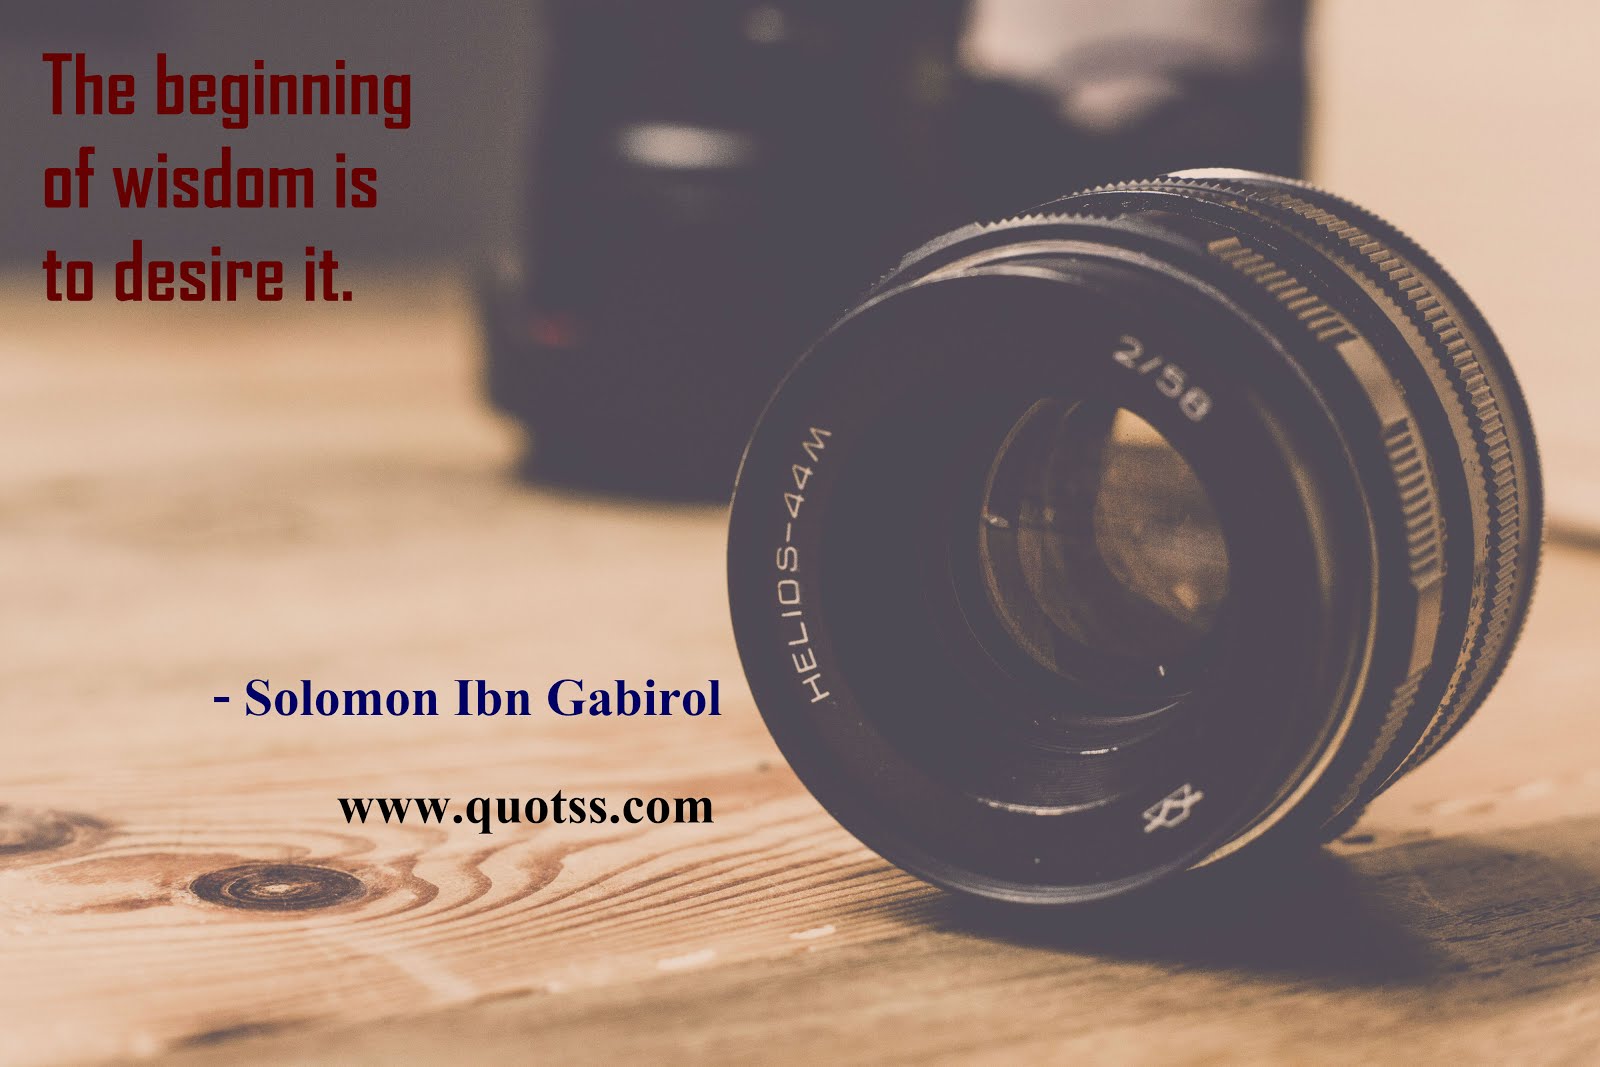 Solomon Ibn Gabirol Quote on Quotss